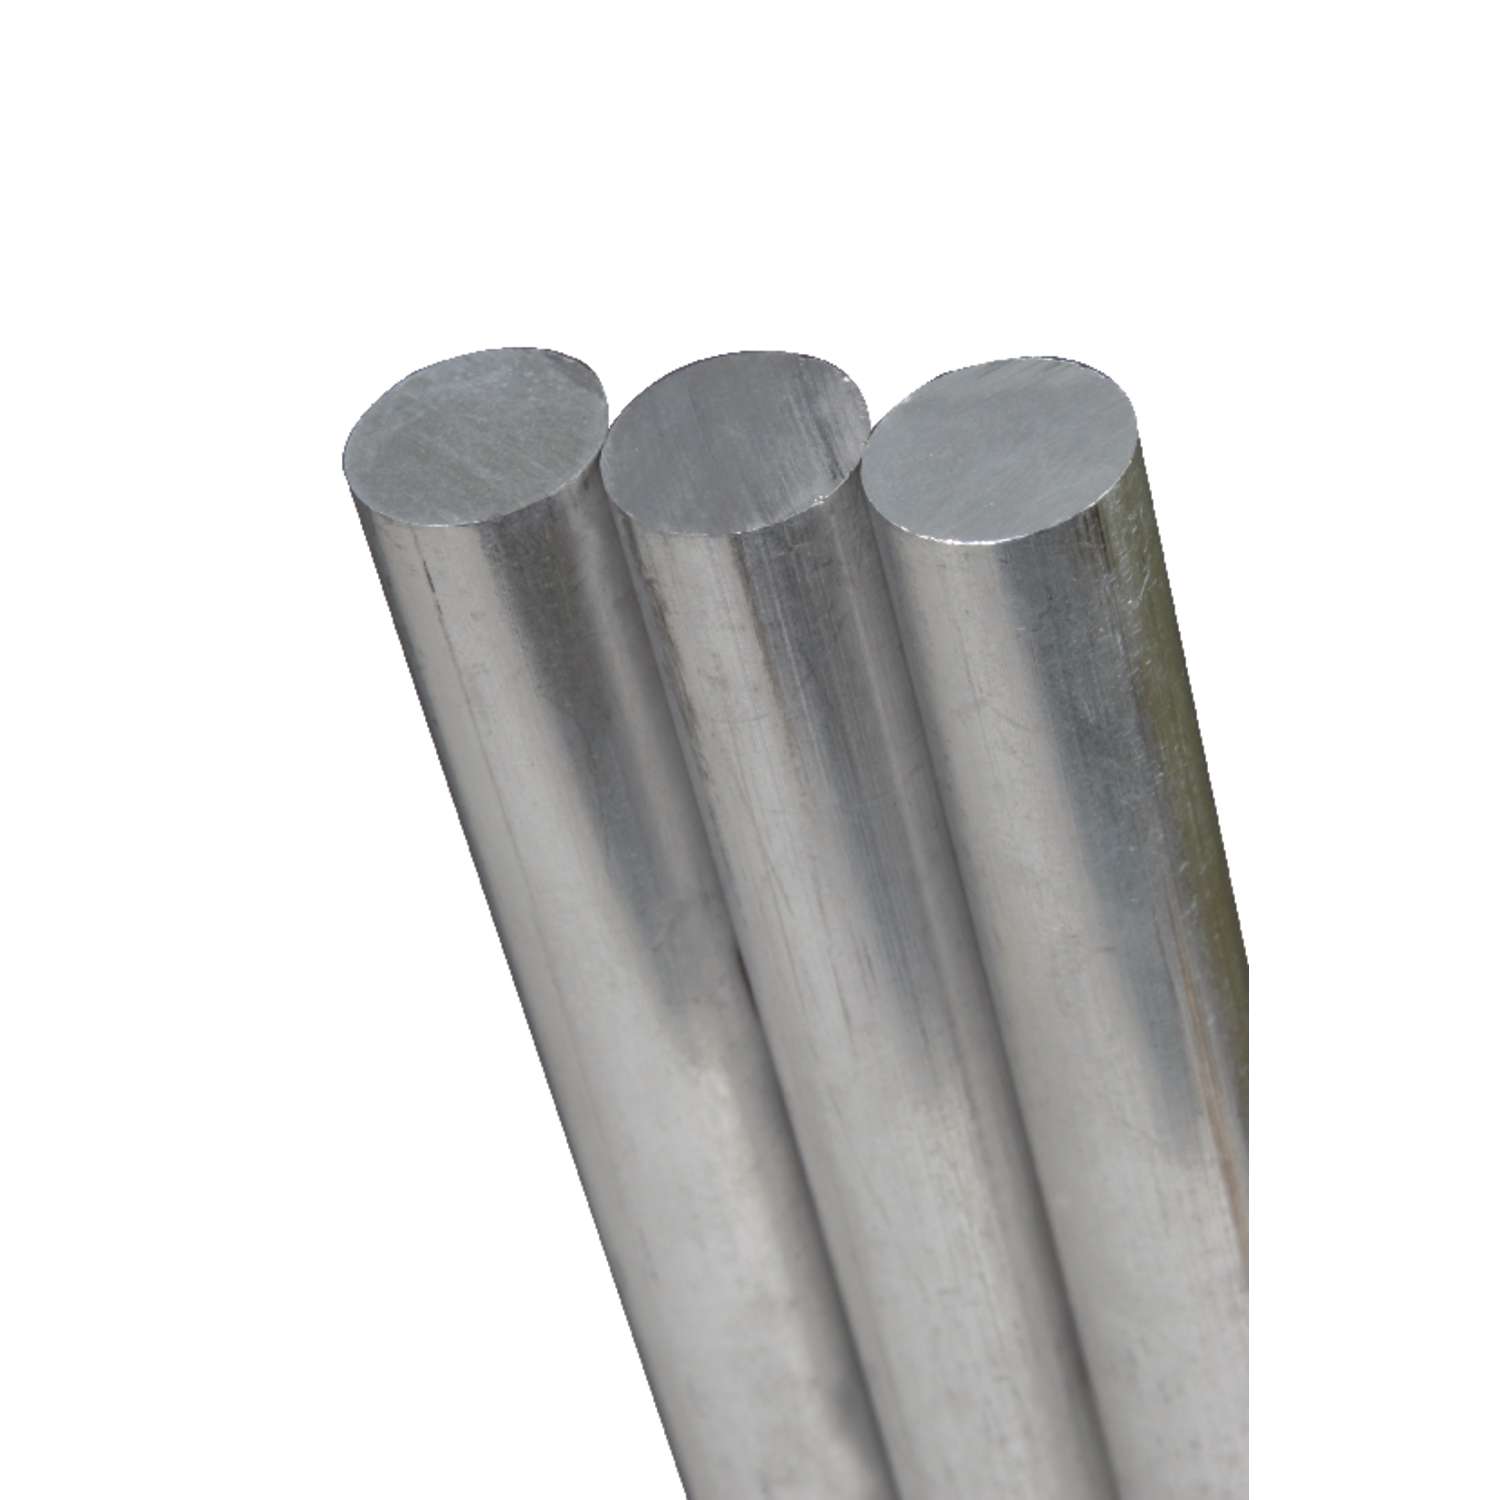 12inch Length 1//4inch Diameter Stainless Steel Rod for Float Valve